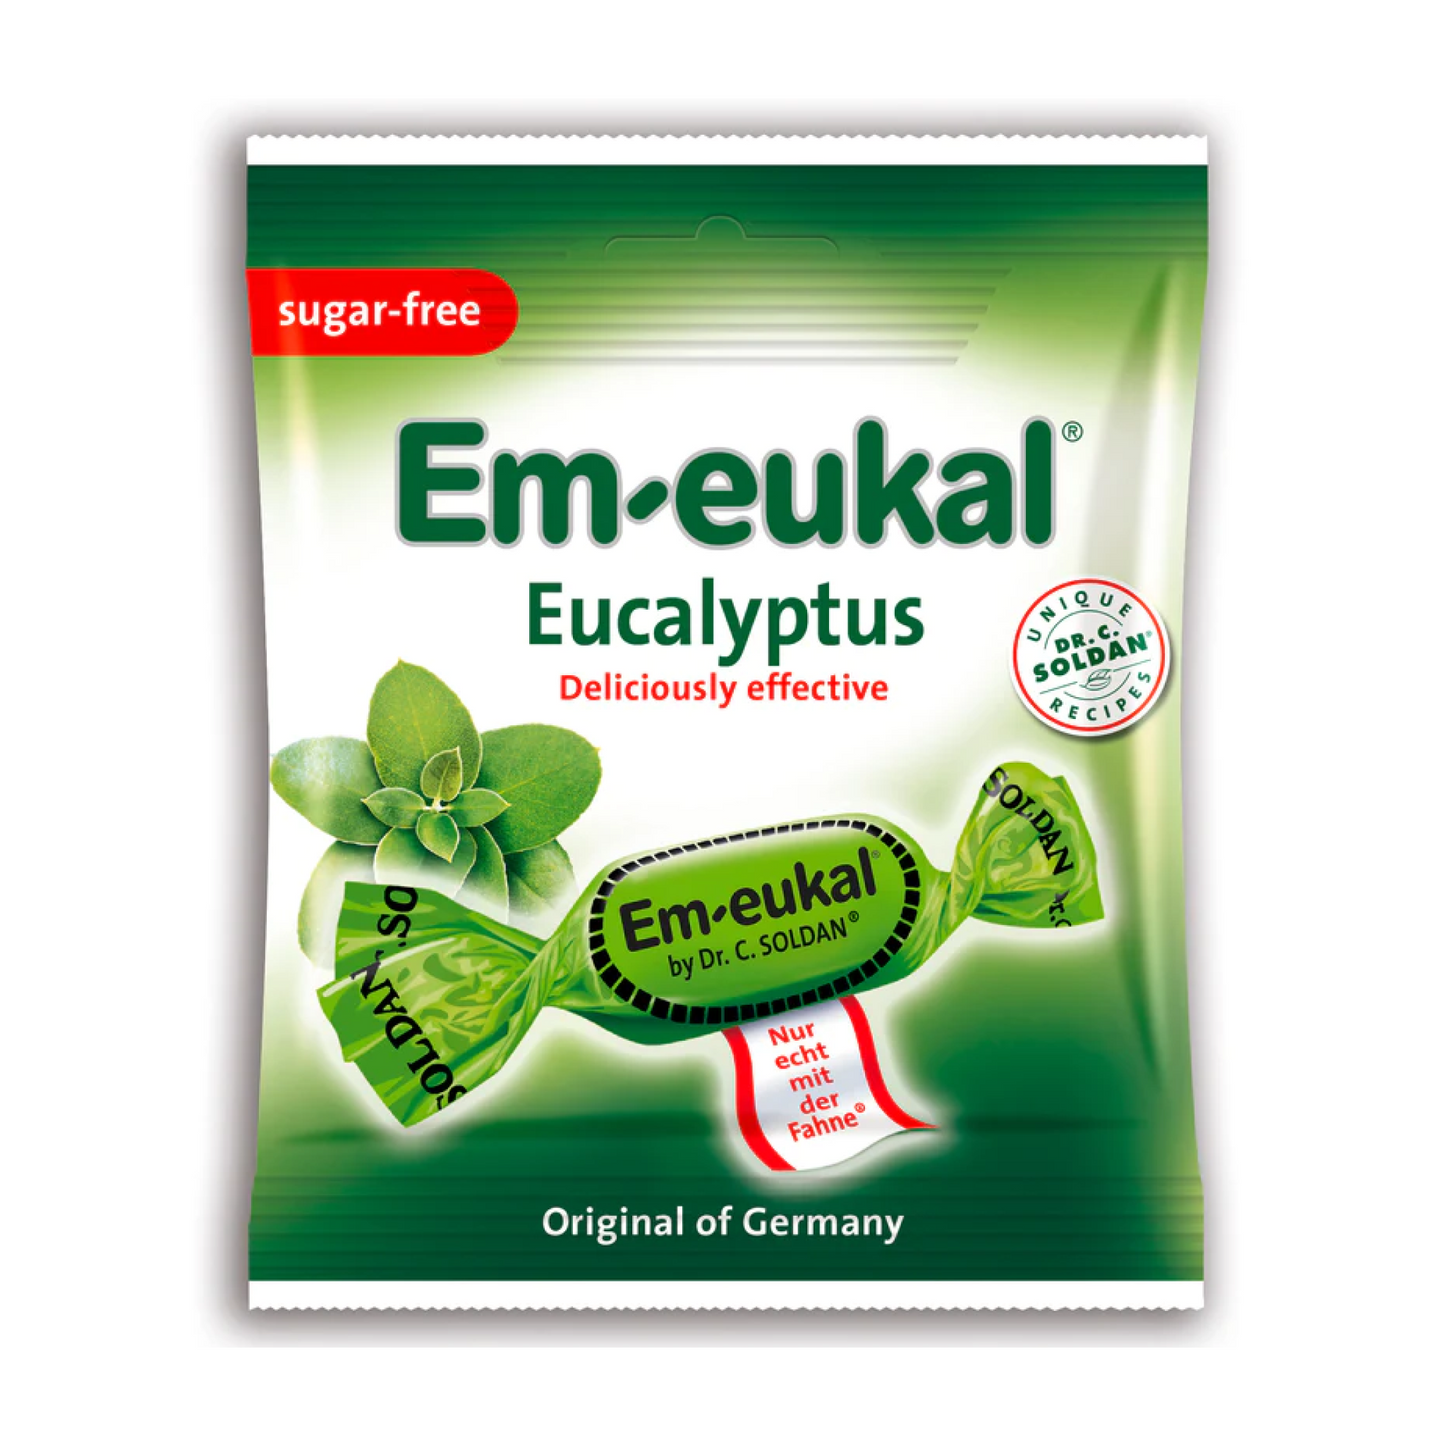 Soldan's Sugar-Free Em-eukal Eucalyptus 50g